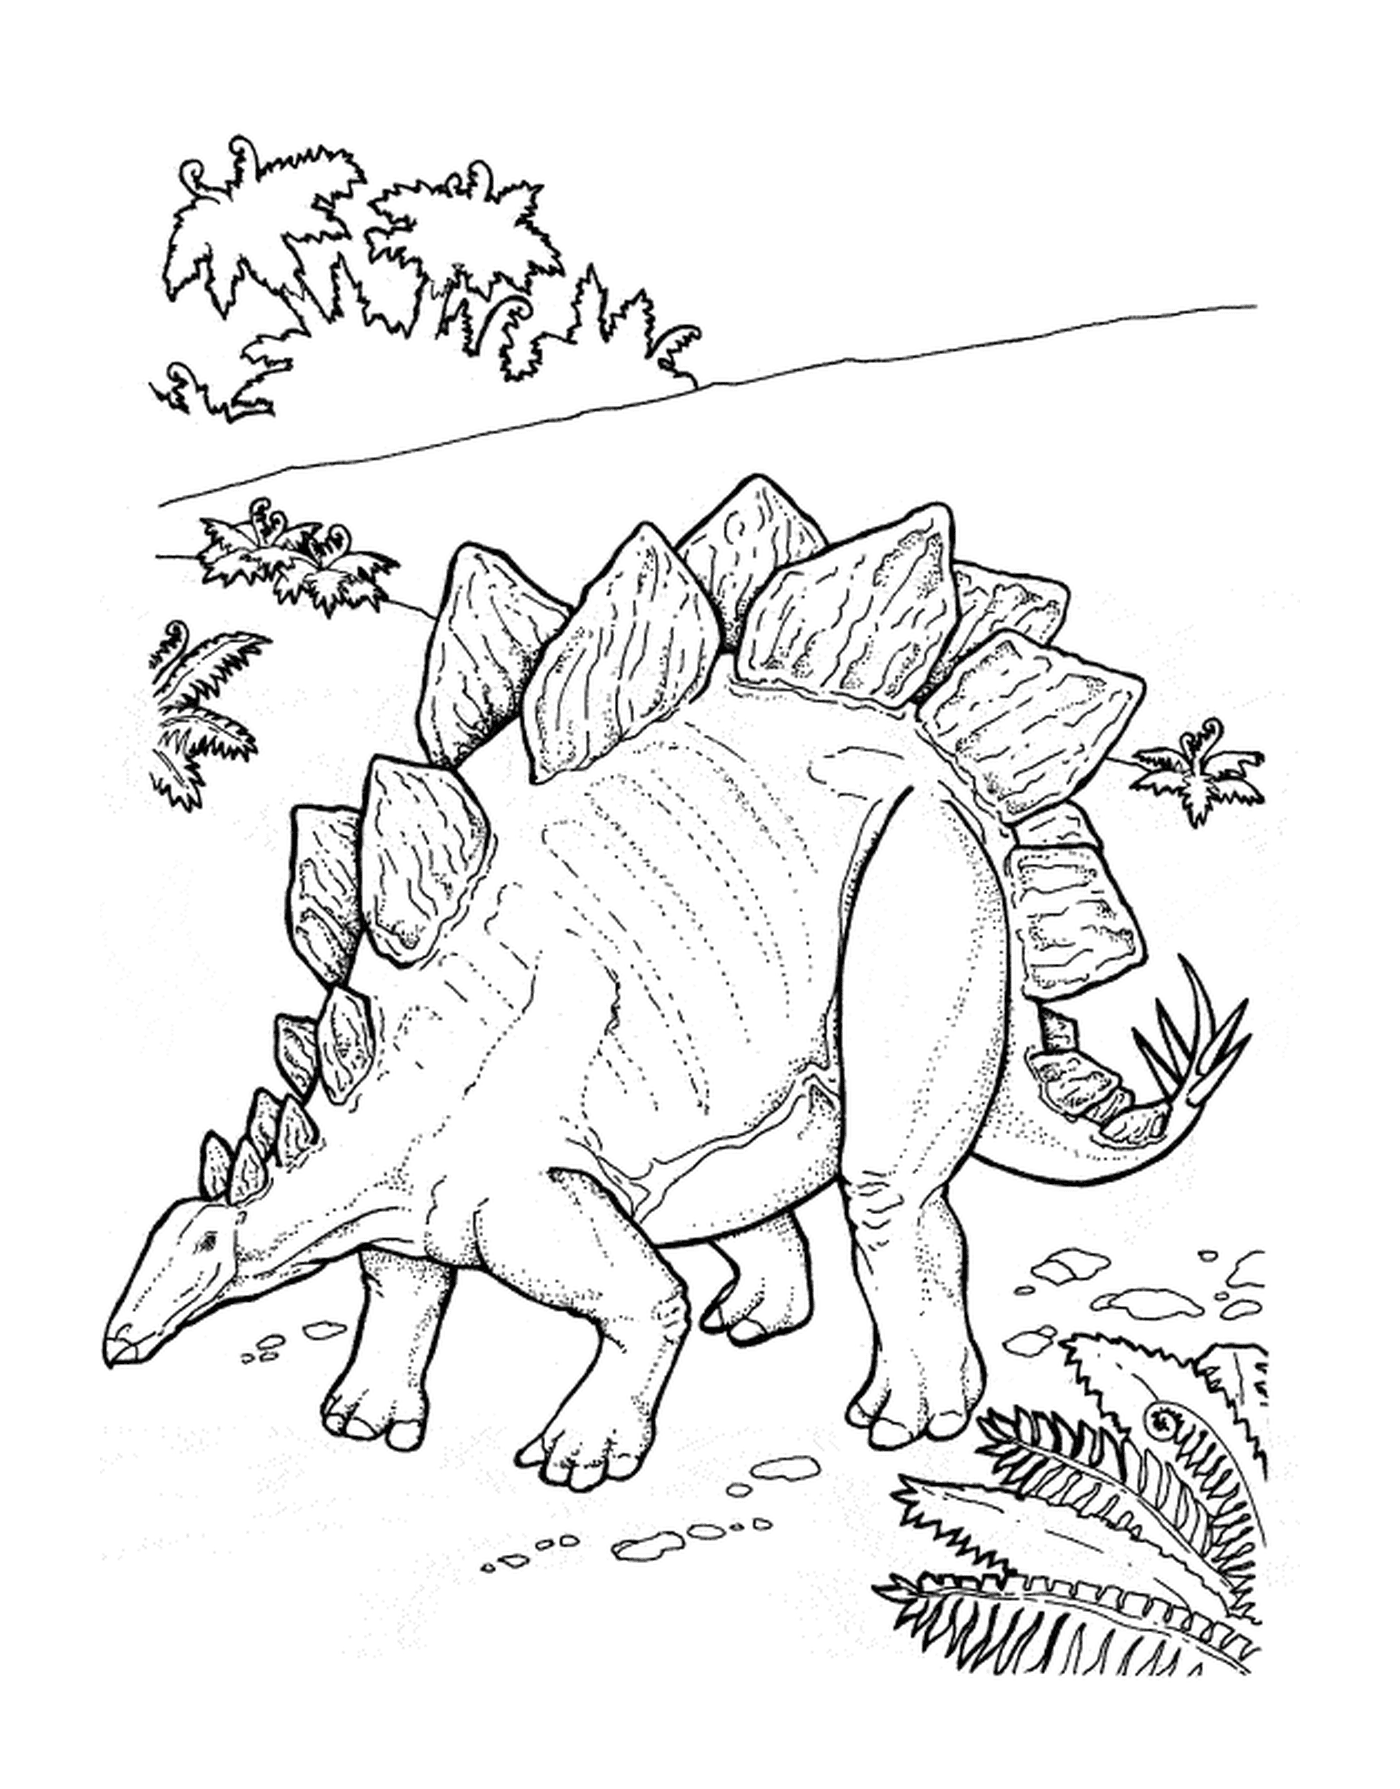   Stégosaure adulte se tenant dans un pré verdoyant 